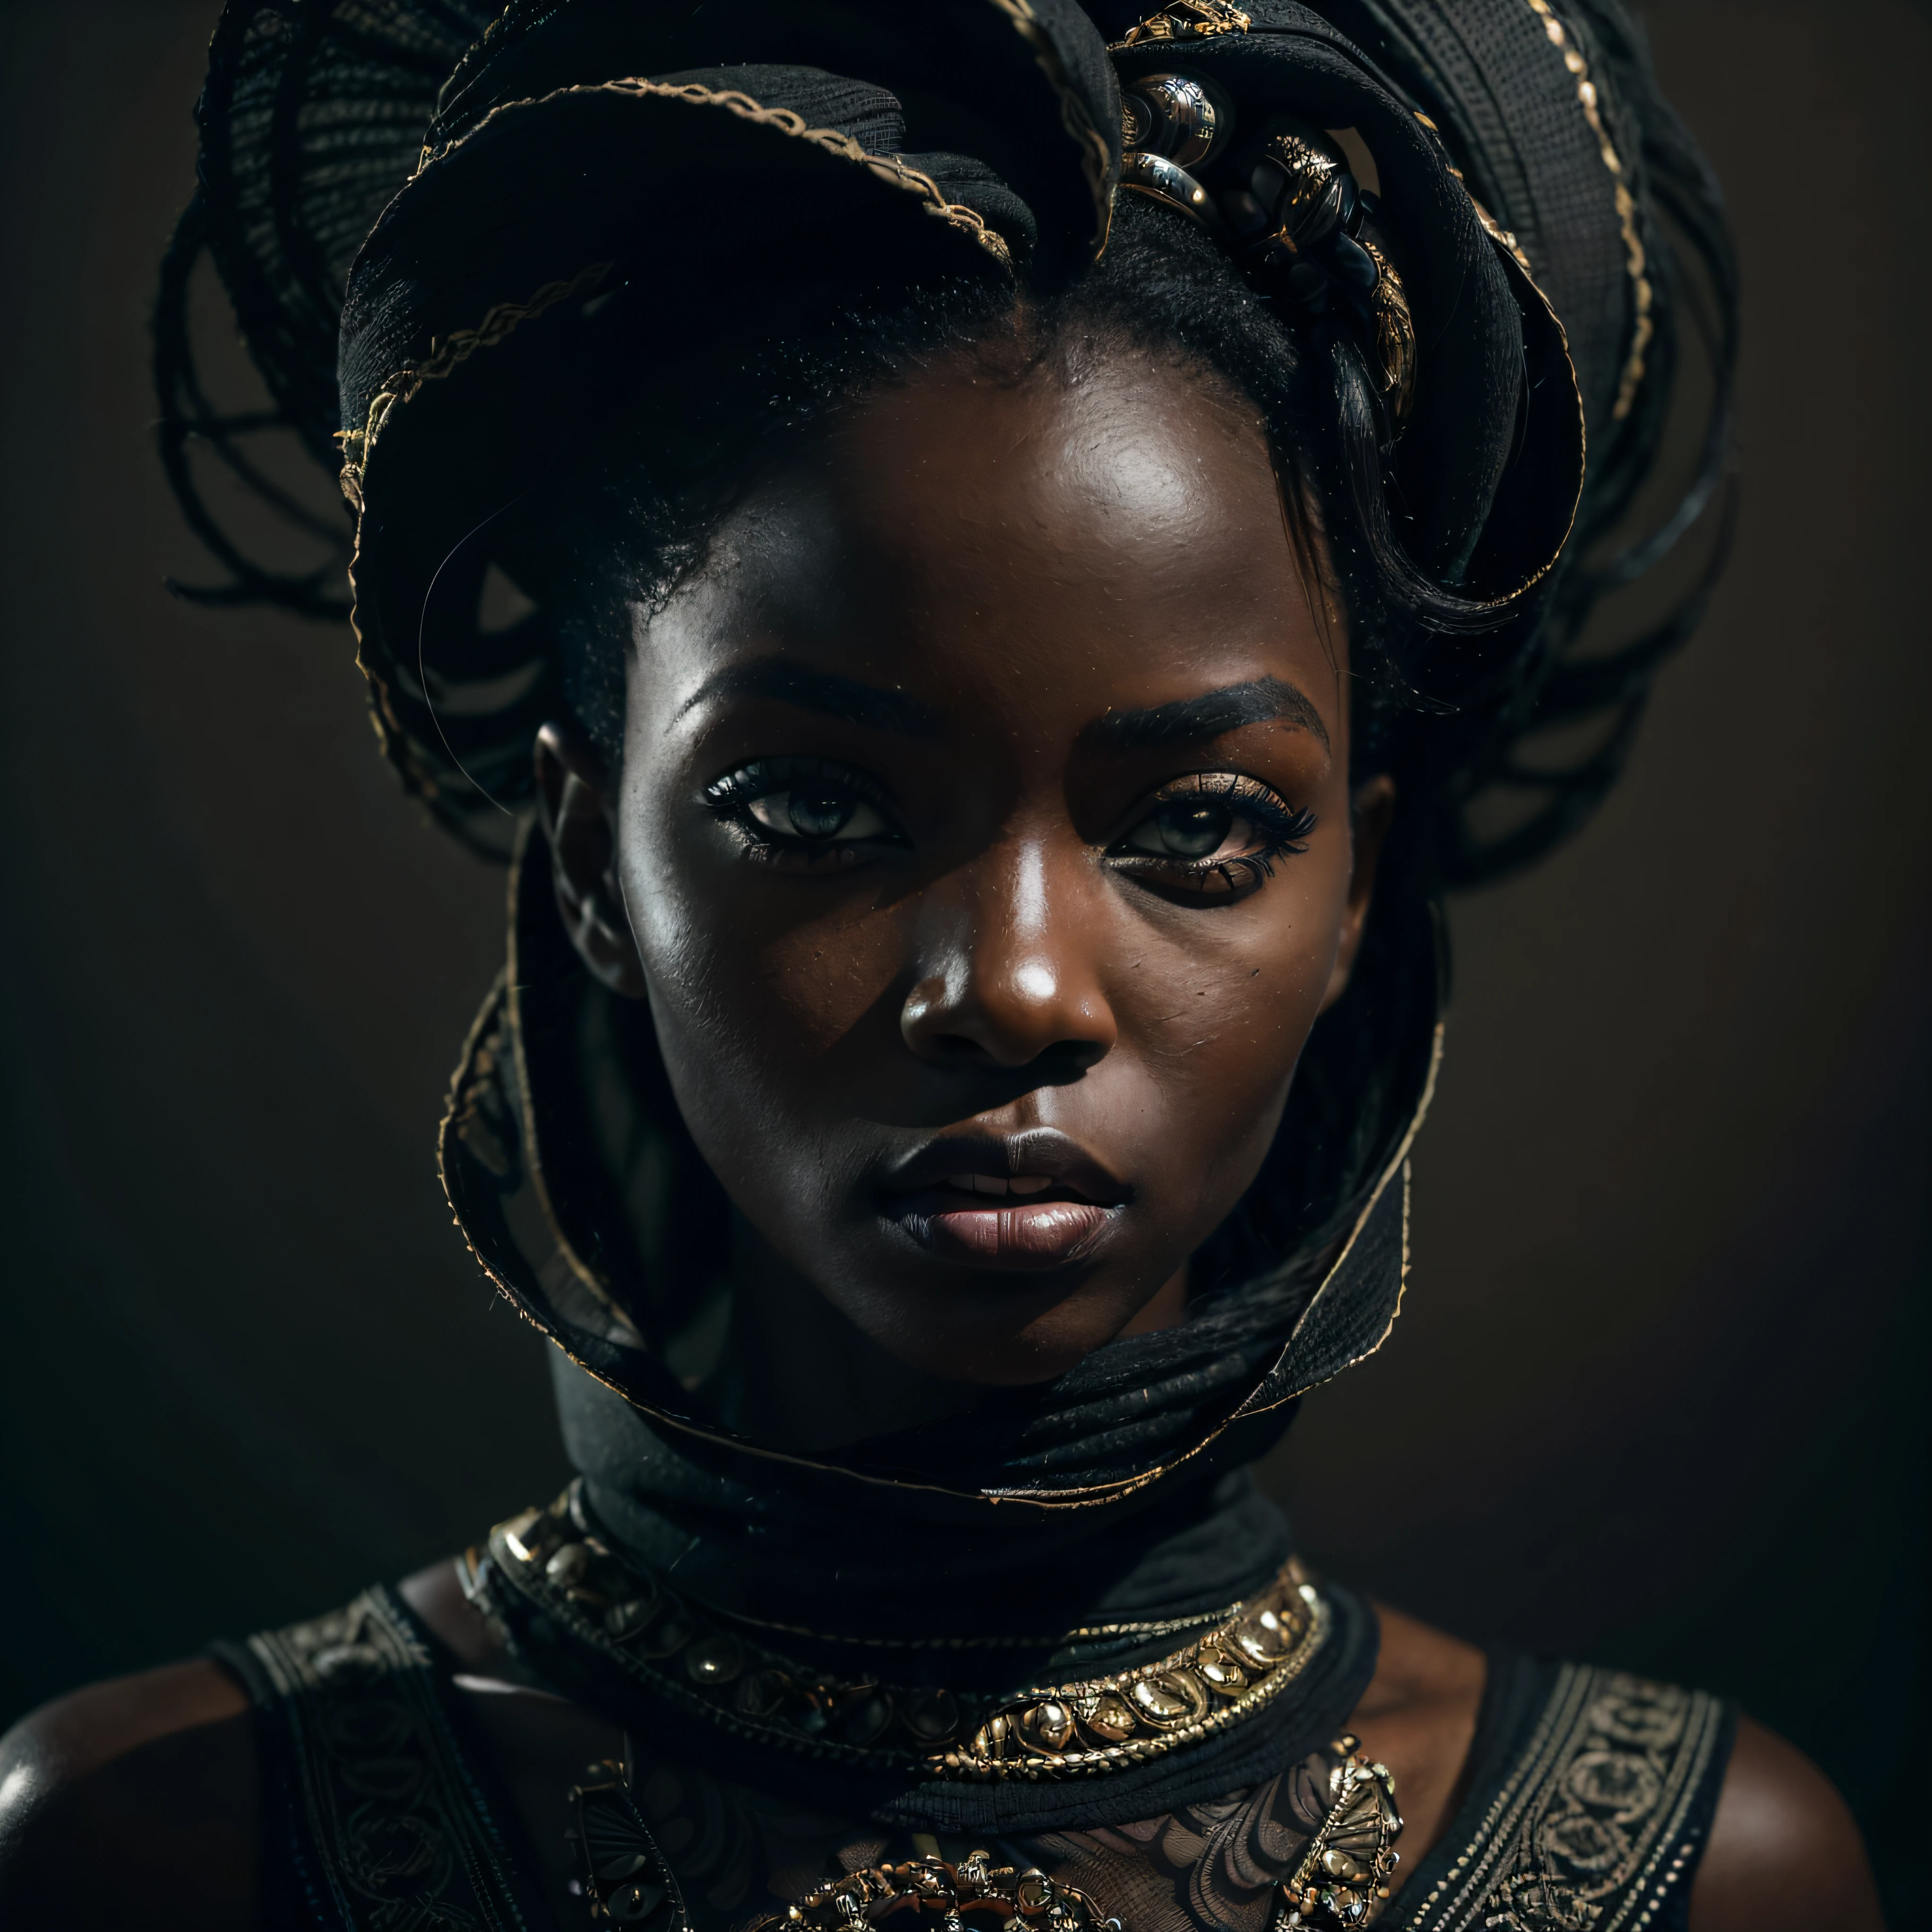 (لَوحَة, متحرك), (تشكل معبرة:1.6), (أسلوب مستقبلي), (A mystical لَوحَة of a black Senegalese woman:1.3), (لون بشرة أسود فحمي:1.3), (السلطة الحقيقية في عينيها: 1.2), ارتداء الماسكارا الداكنة, تم التقاط الصورة بدقة 8K مذهلة وتنسيق خام للحفاظ على أعلى جودة للتفاصيل. إنها ترتدي ملابس مستقبلية أنيقة, (صدور صغيرة:1.3), (تم تصوير عينيها باهتمام شديد بالتفاصيل: 1.3), تم التقاط الصورة بعدسة تؤكد عمق عينيها, (تهب الرياح من حولها), والخلفية عبارة عن إعداد استوديو داكن يعزز ألوان المشهد. تم تصميم الإضاءة والظلال بخبرة لإبراز ثراء لون بشرتها والجو المكثف. يضيف شعرها الإبداعي لمسة من التباين على بشرتها, يجسد التكوين العام جوهرها بالأصالة والنعمة, creating a لَوحَة that celebrates her heritage and beauty. التصوير الفوتوغرافي باستخدام أفضل تقنيات الظل والإضاءة, لخلق صورة ساحرة تتجاوز المرئيات, رأس مائل قليلاً,